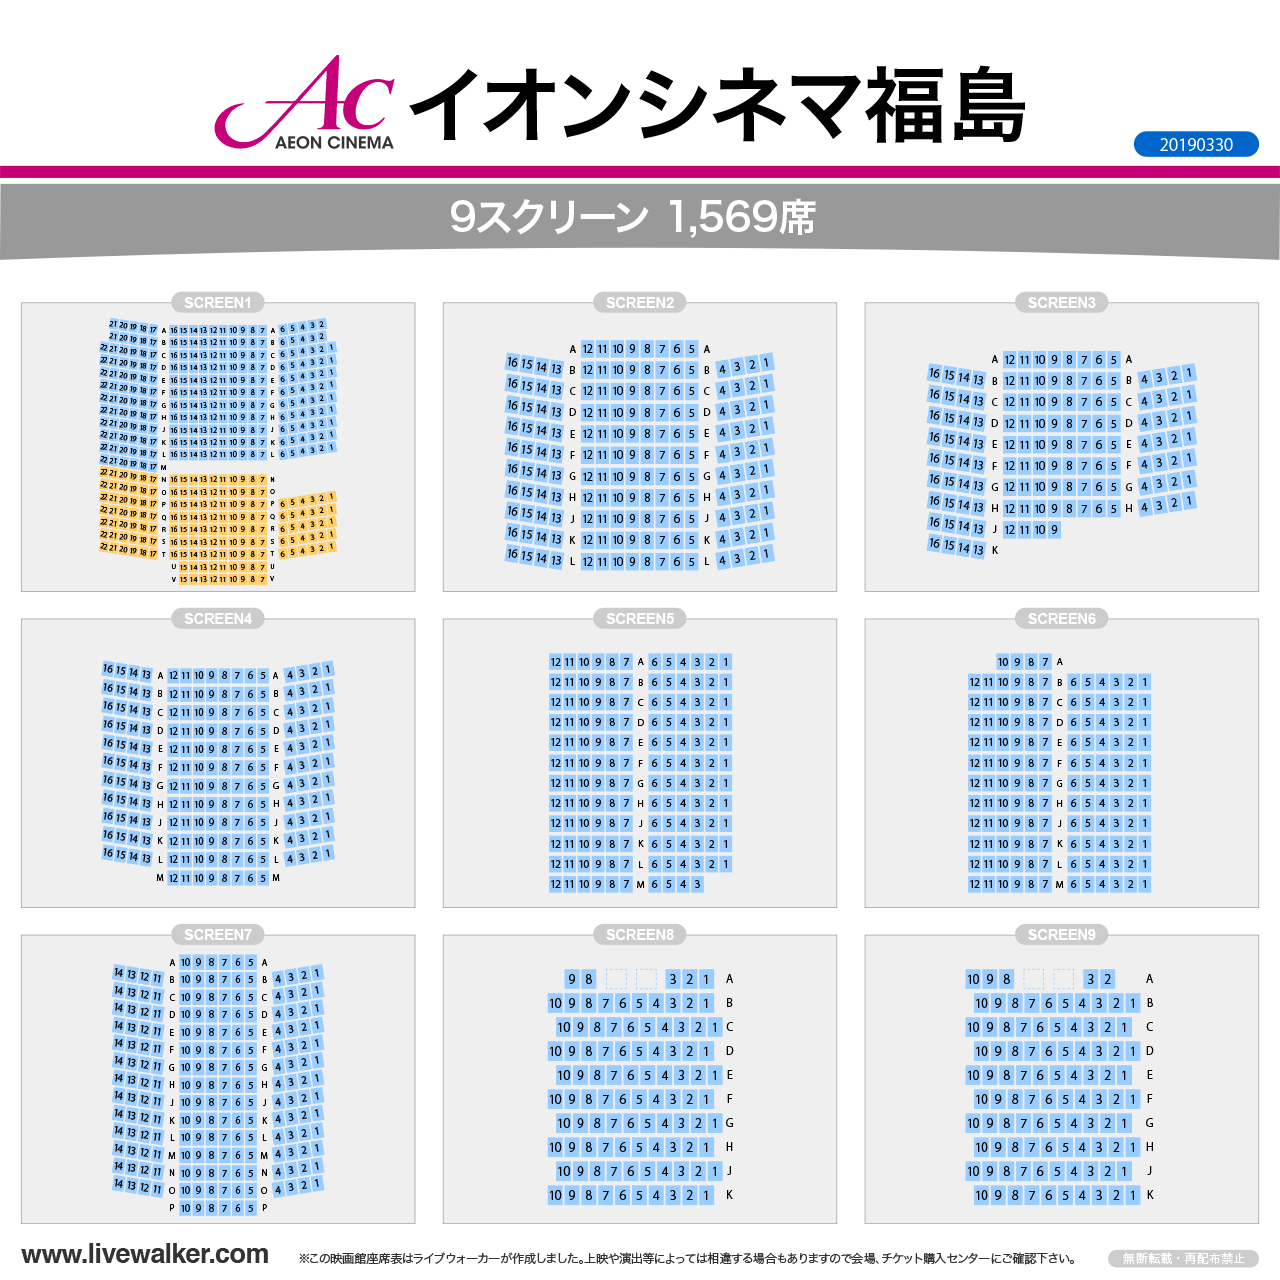 イオンシネマ福島スクリーンの座席表